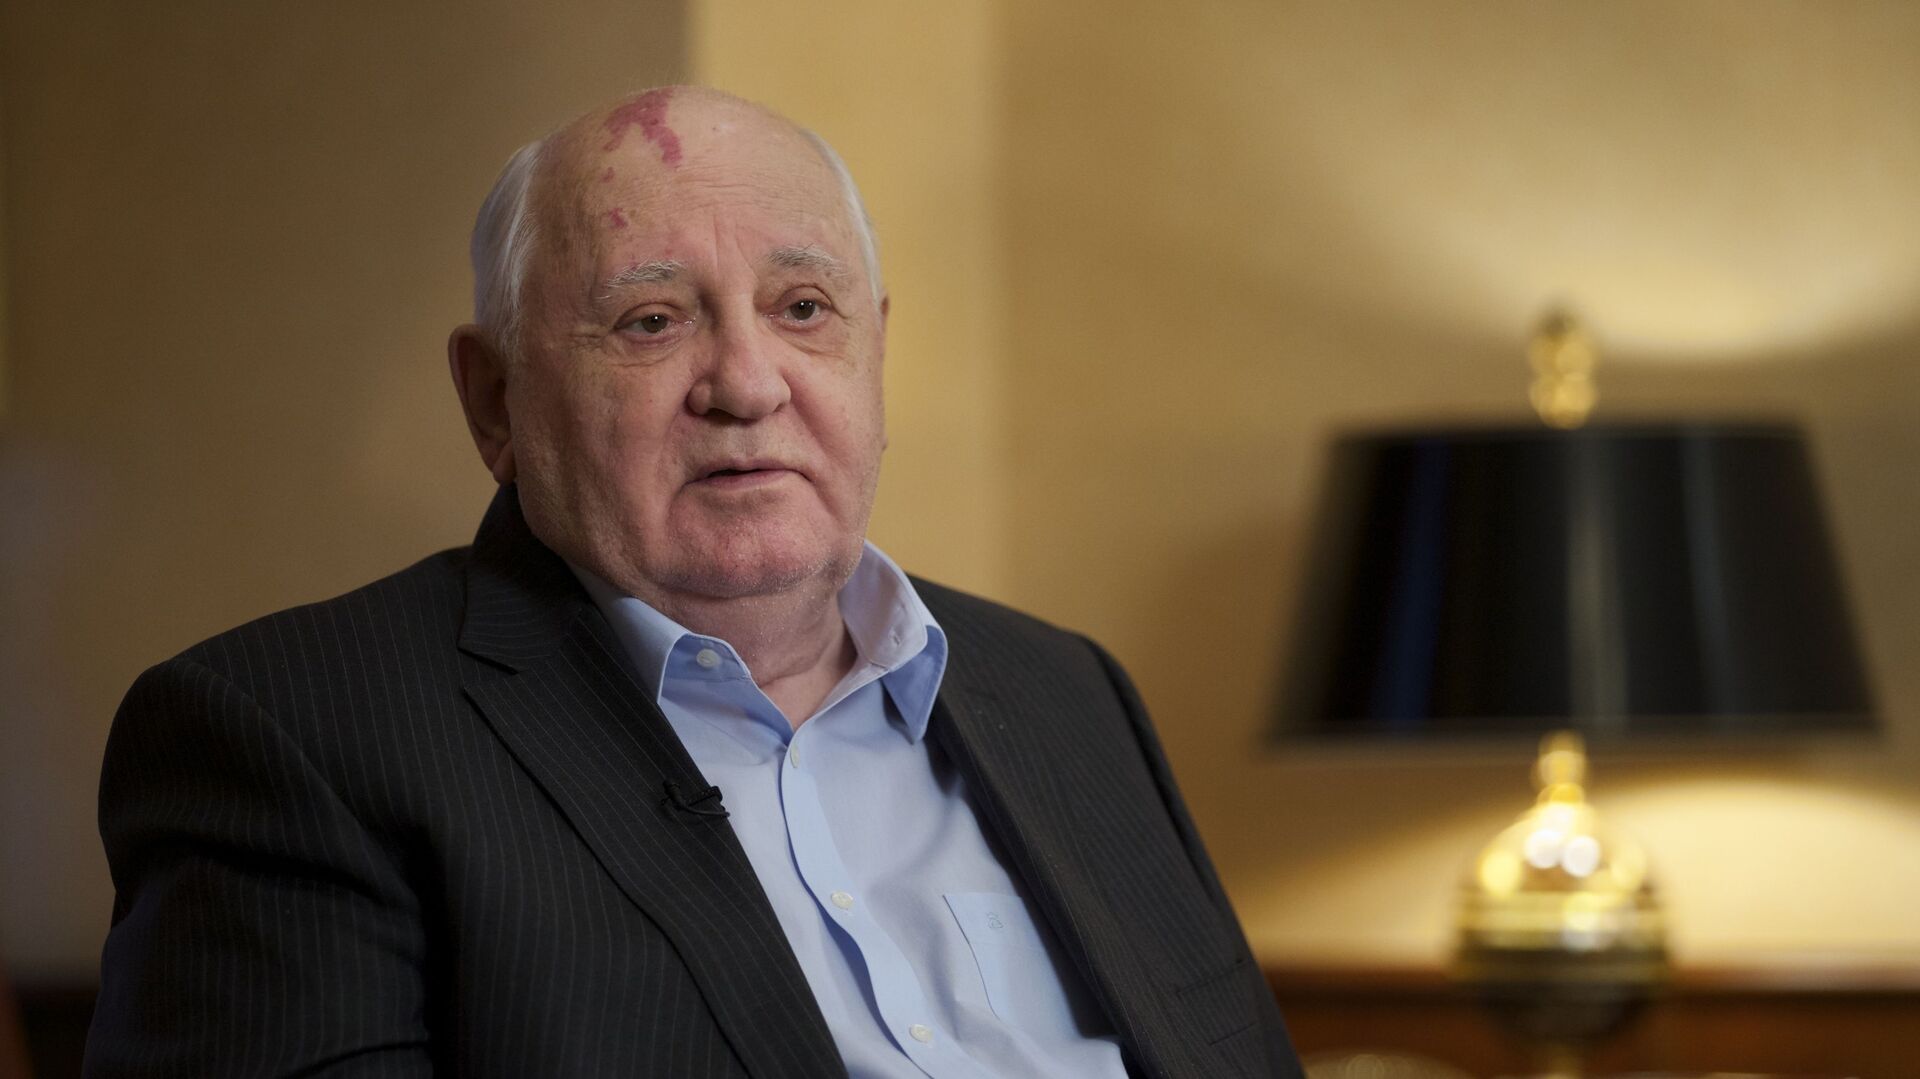 Morre em Moscou o ex-líder comunista Mikhail Gorbachev, último líder da União Soviética